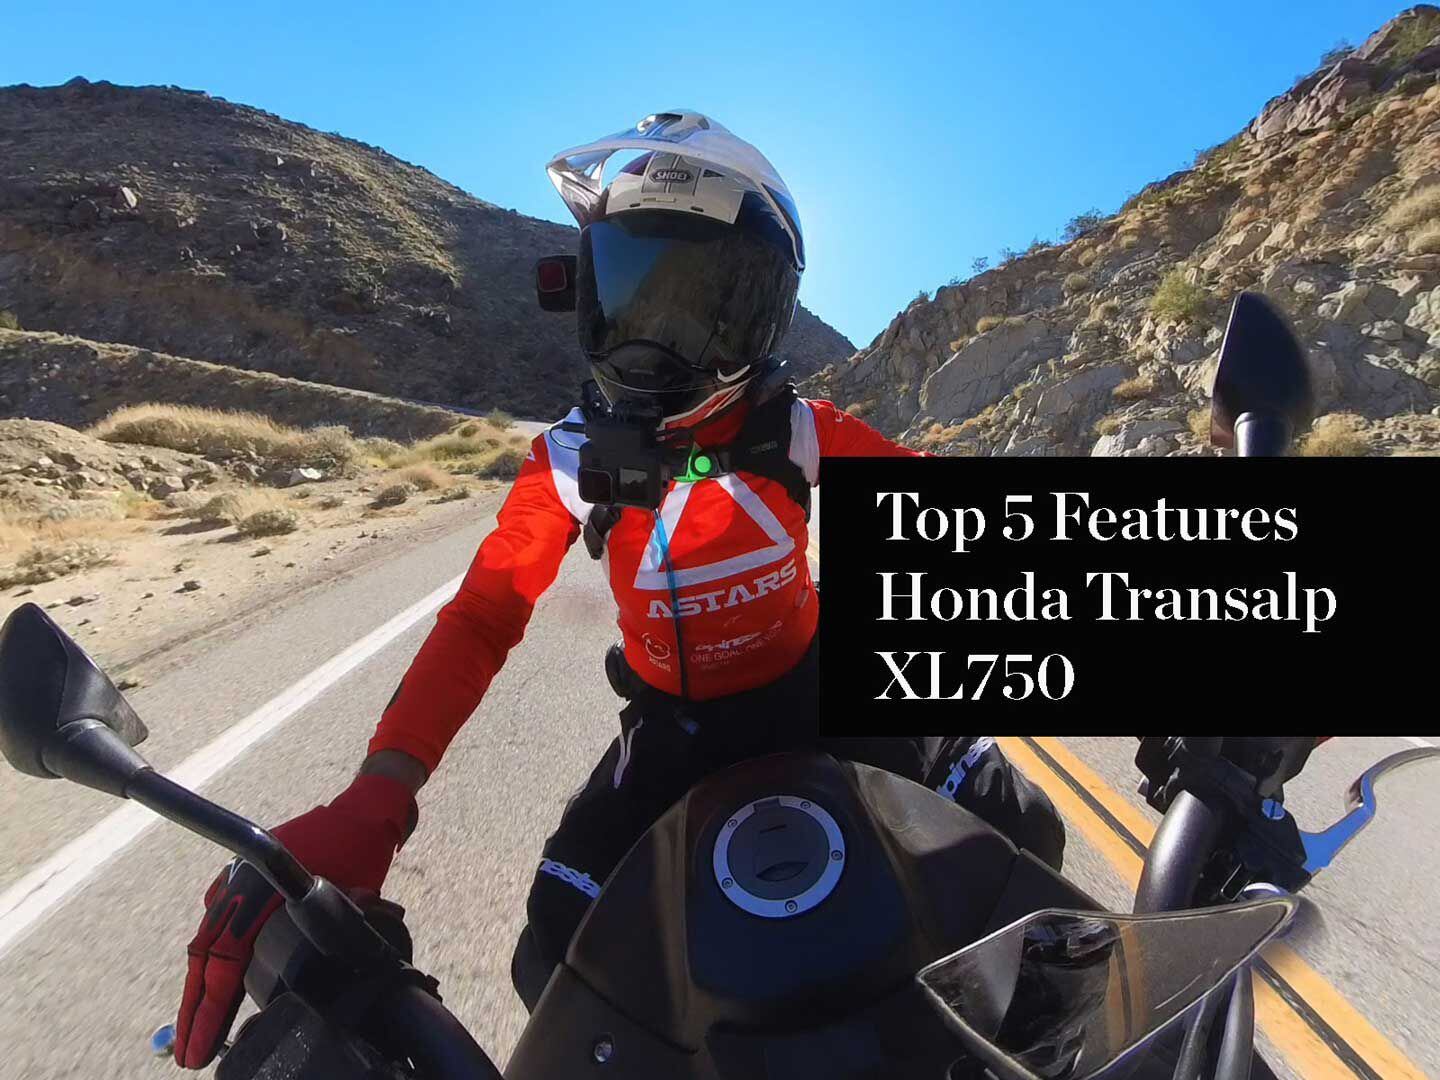 Top 5 Features Honda Transalp XL750